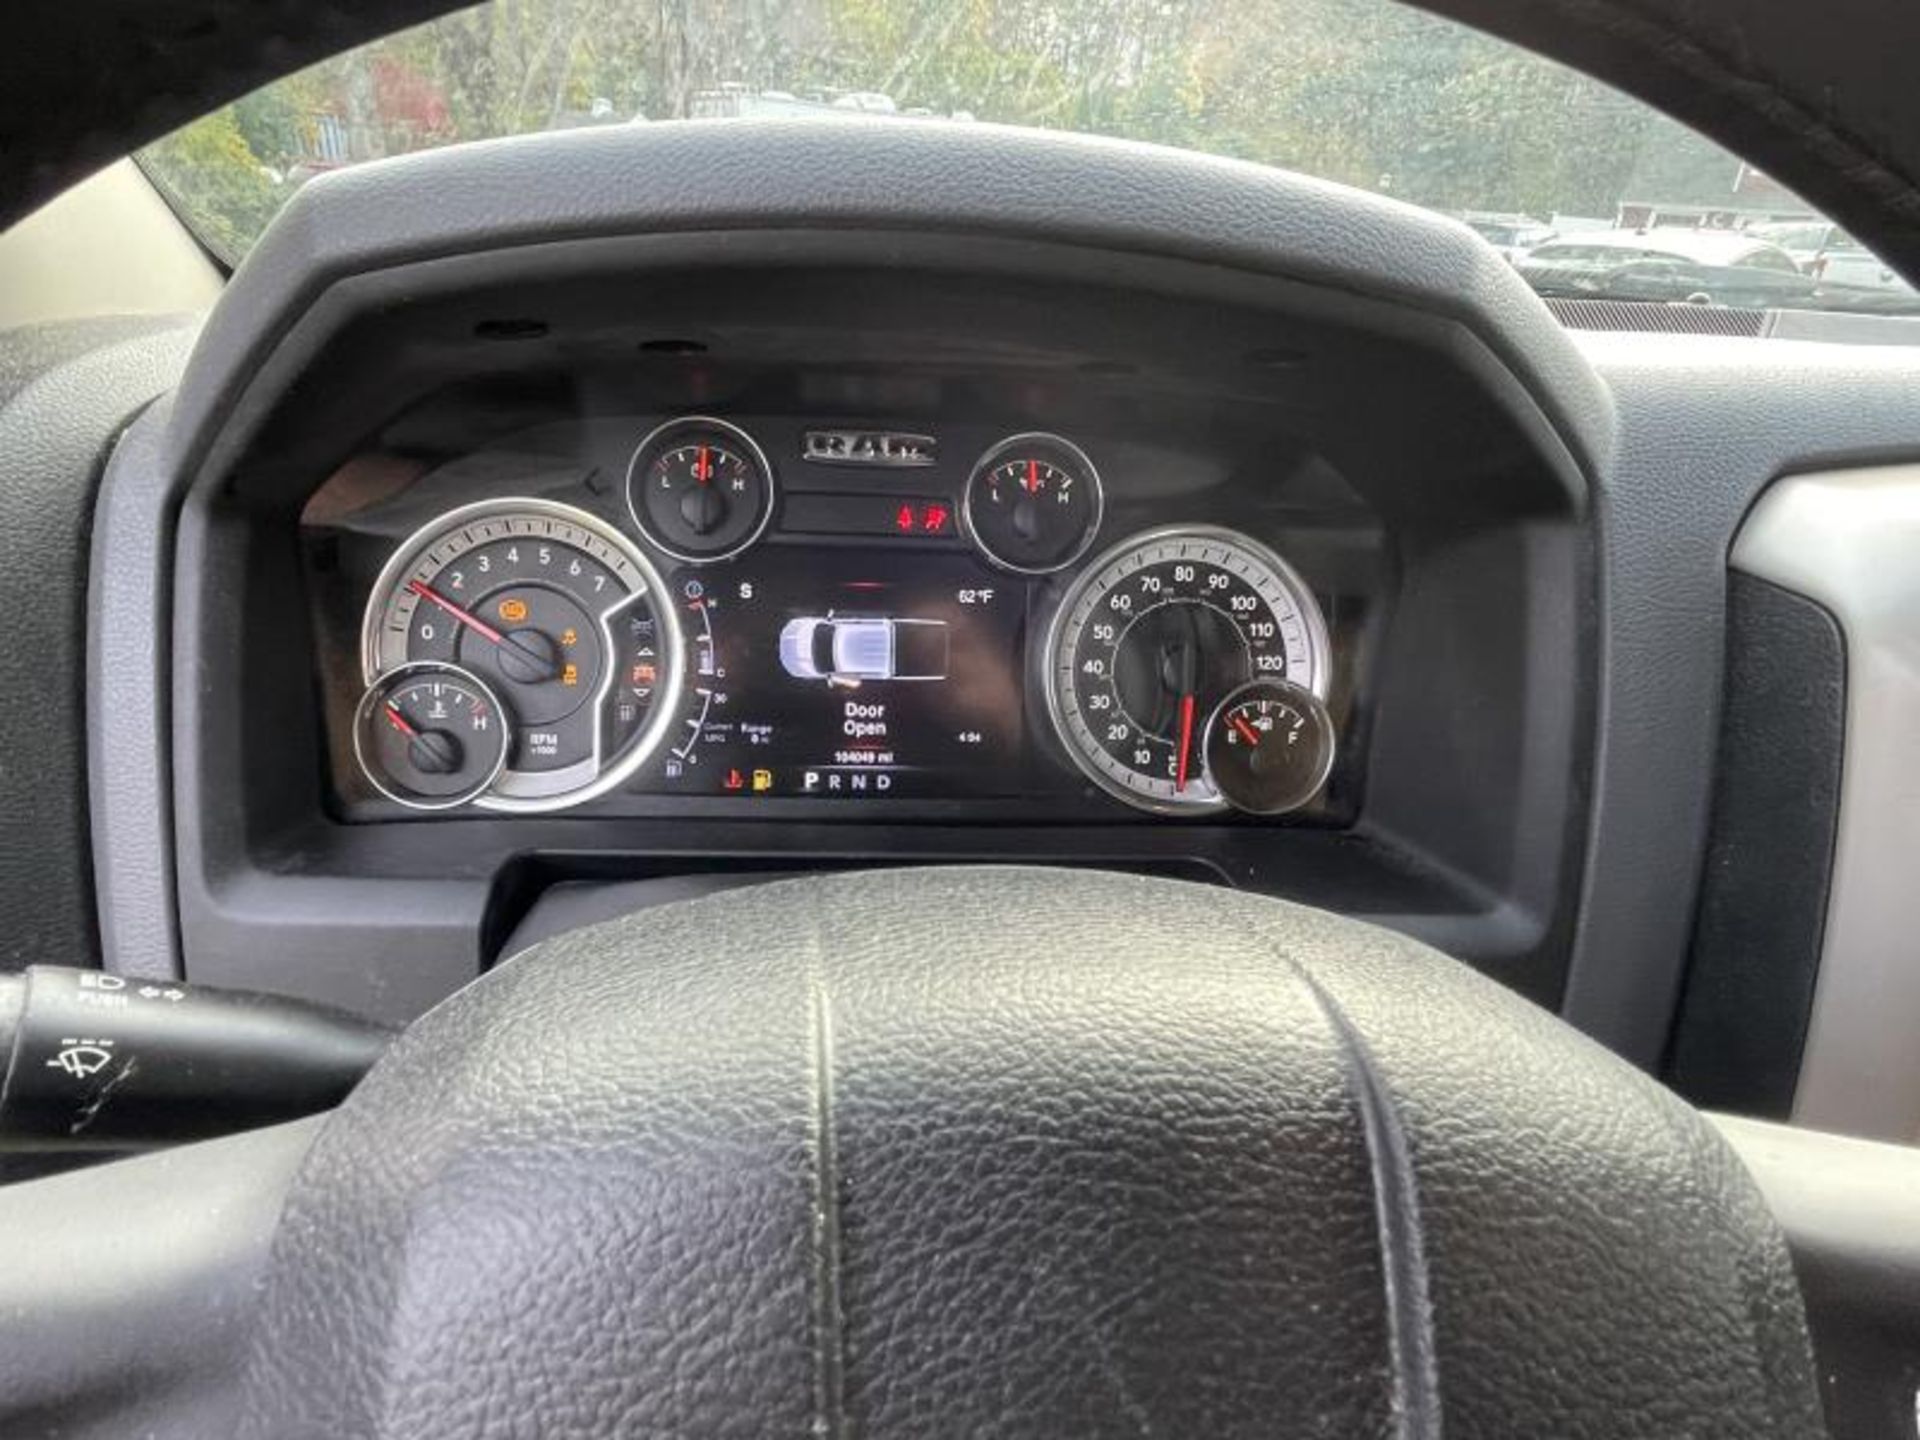 2016 Dodge Ram 1500 Hemi 5.7 Liter 4-Door White T1 2016 Dodge Ram 1500 Hemi 5.7 Liter 4-Door White - Image 24 of 33